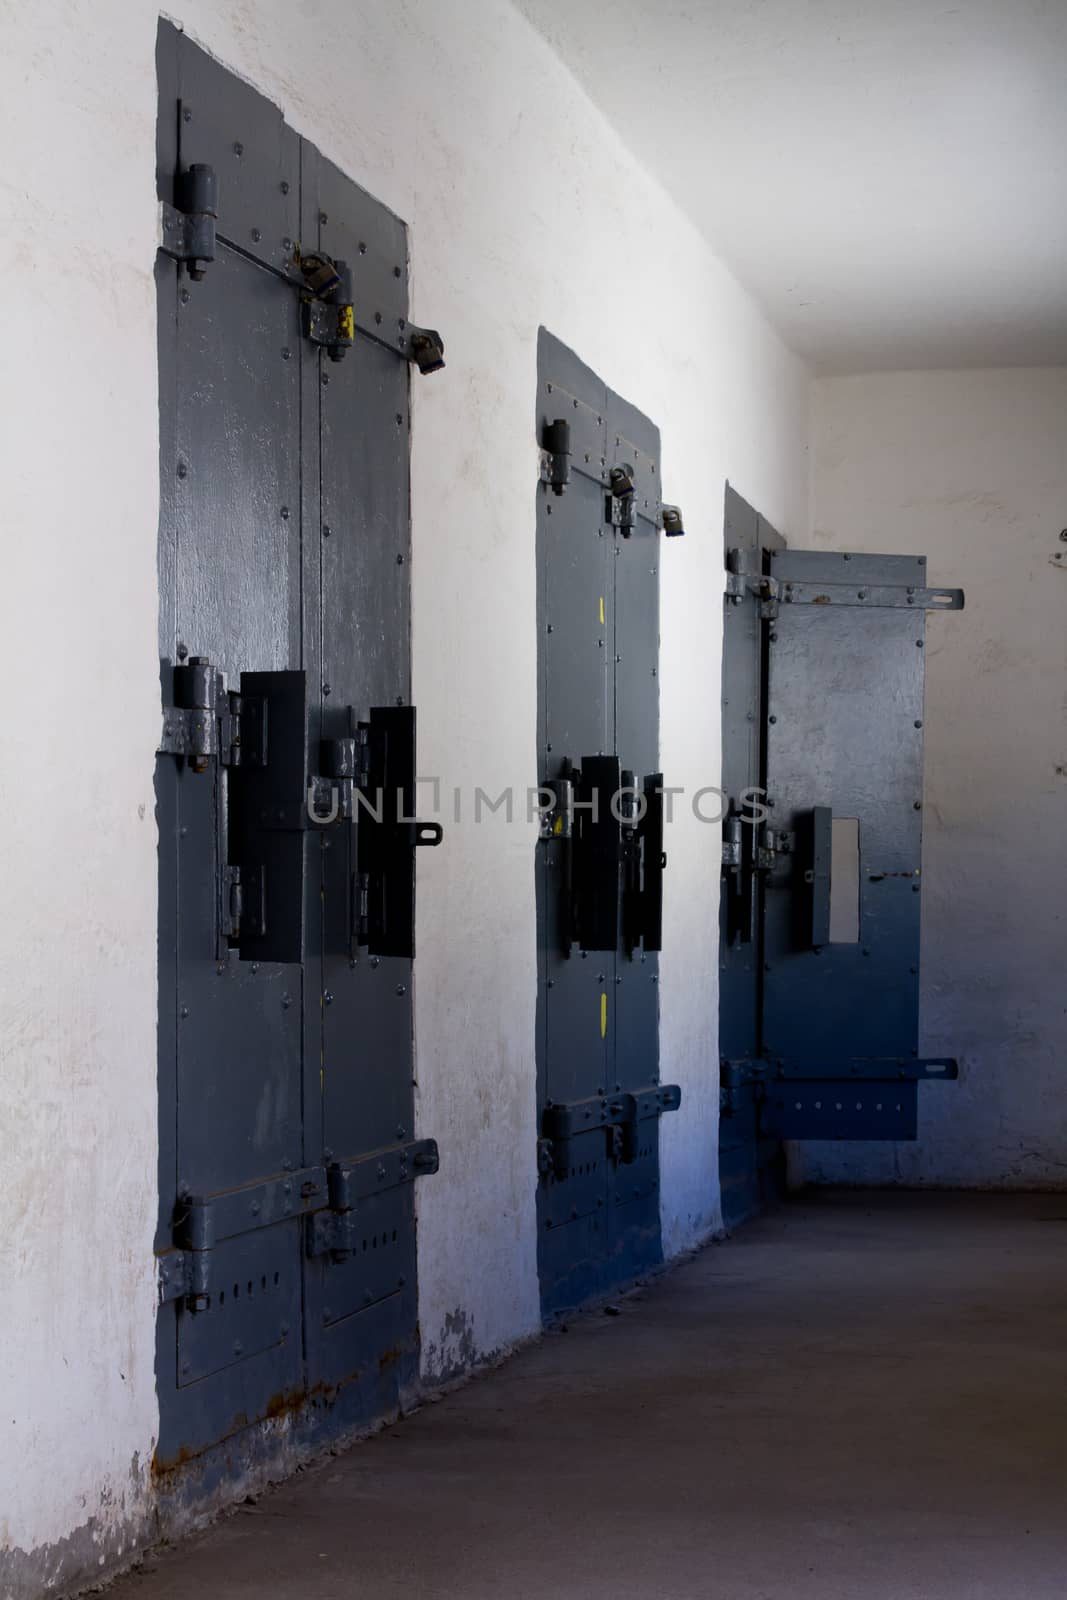 Three doors leading to solitary. Last door of the three is open